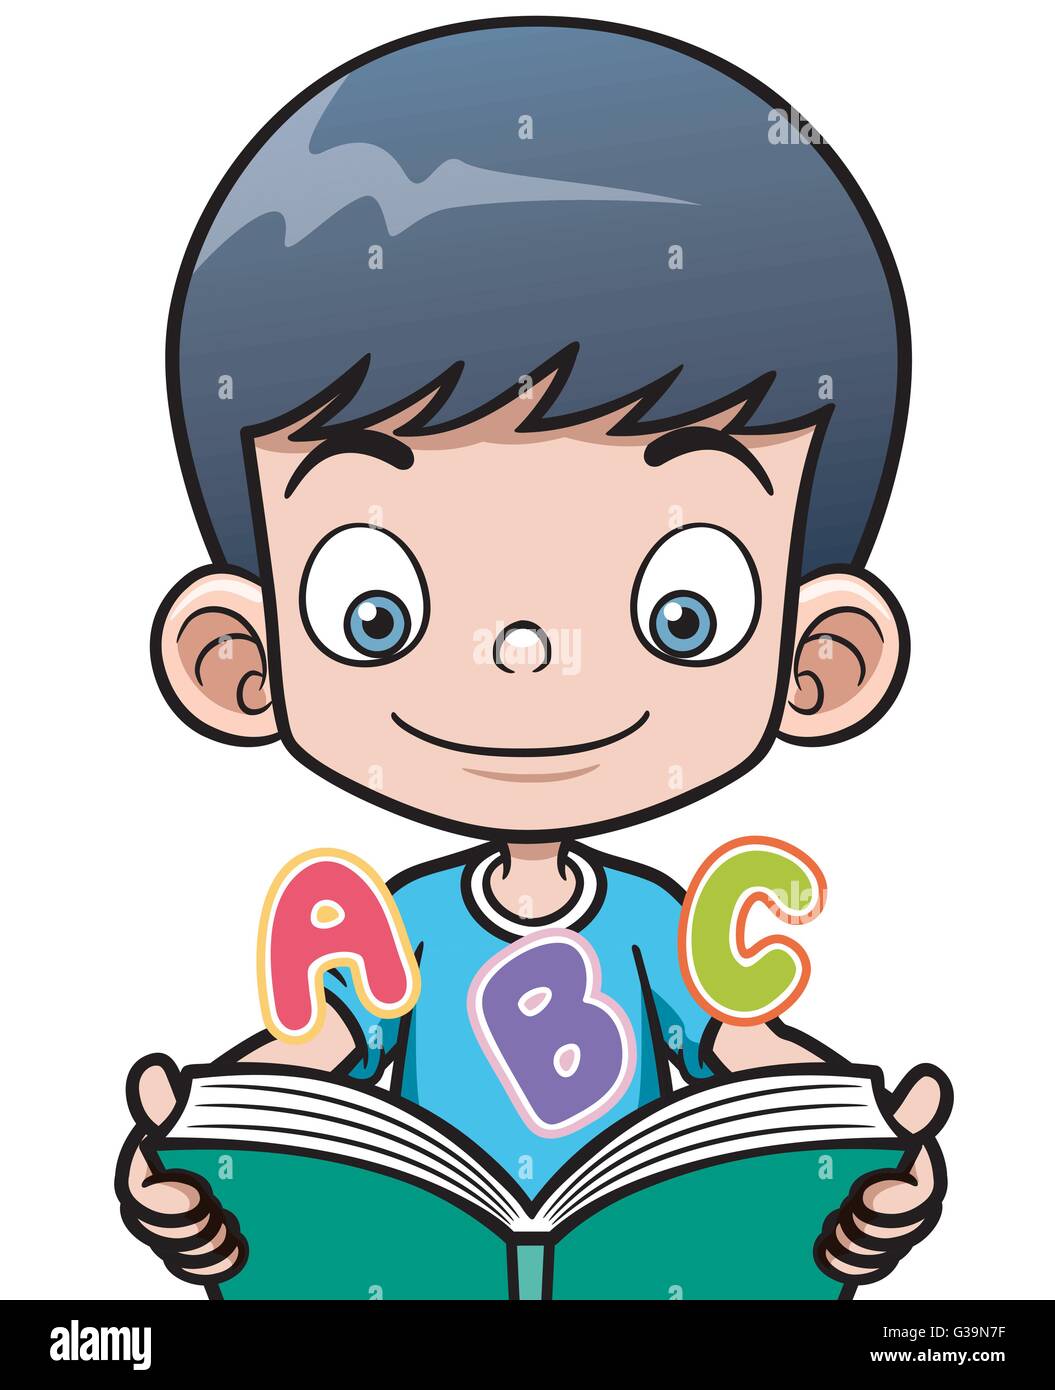 Vector illustration of cartoon boy reading a book Stock Vector